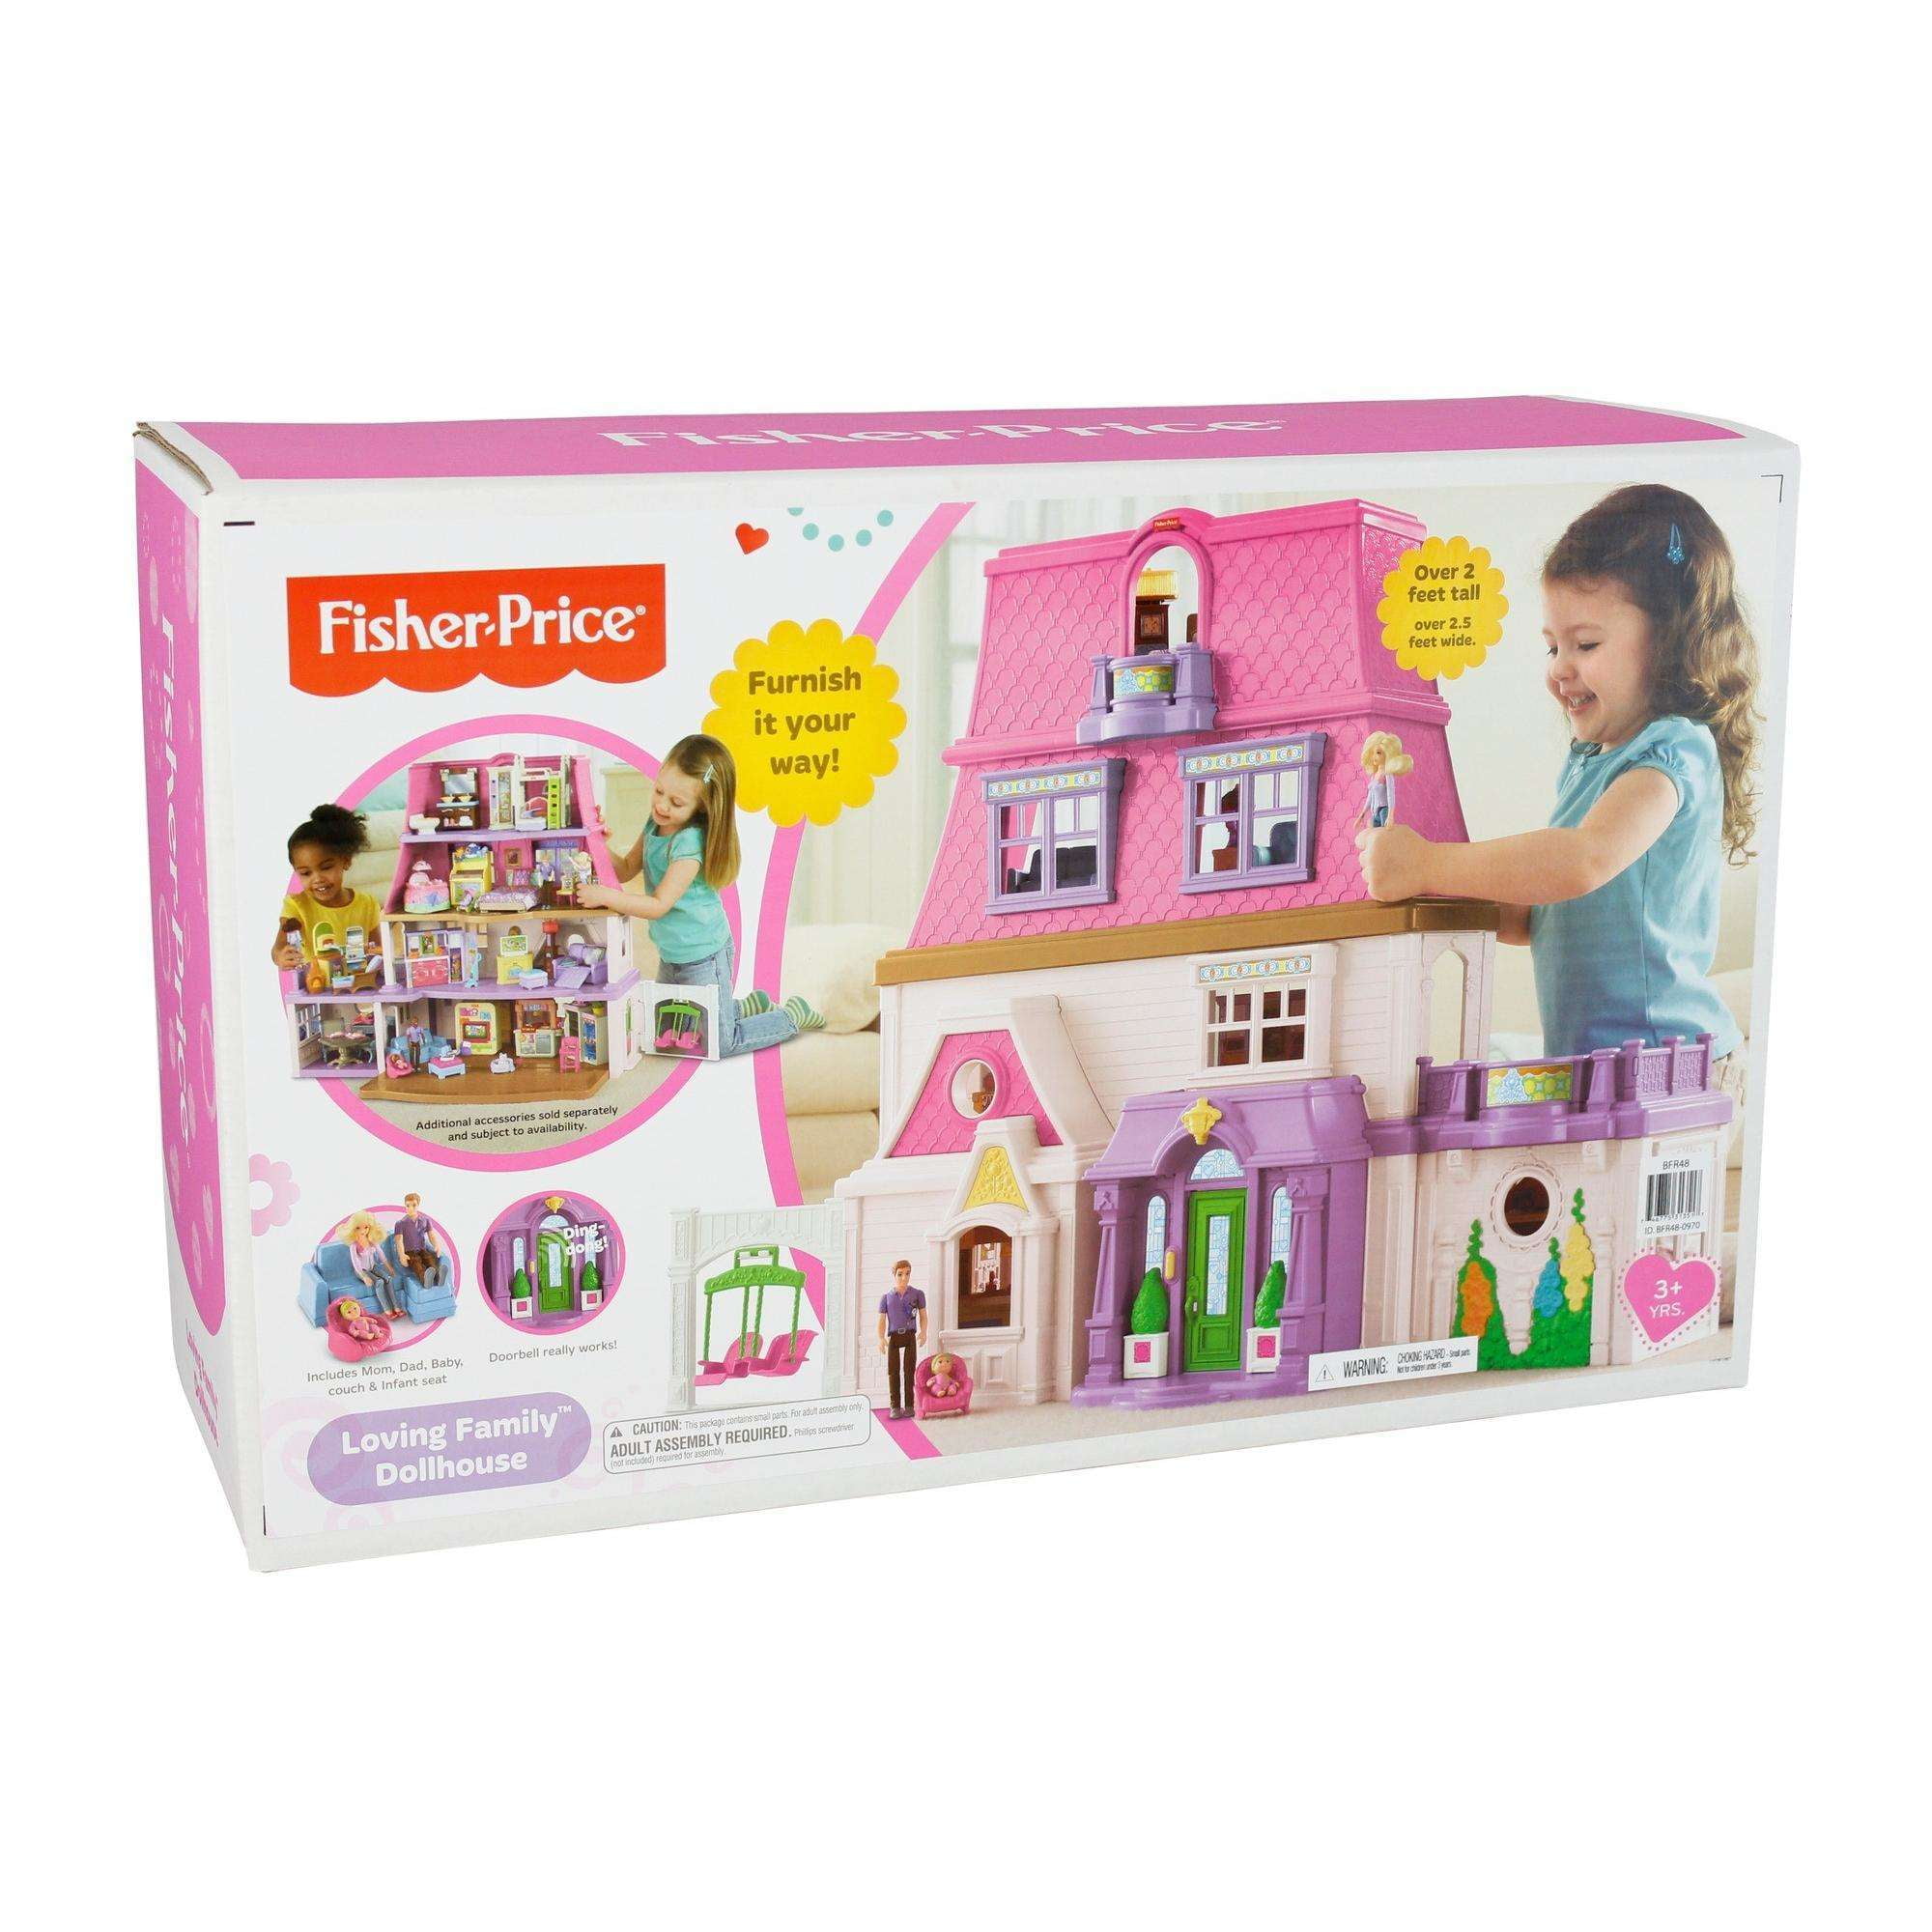 loving family dollhouse gift set